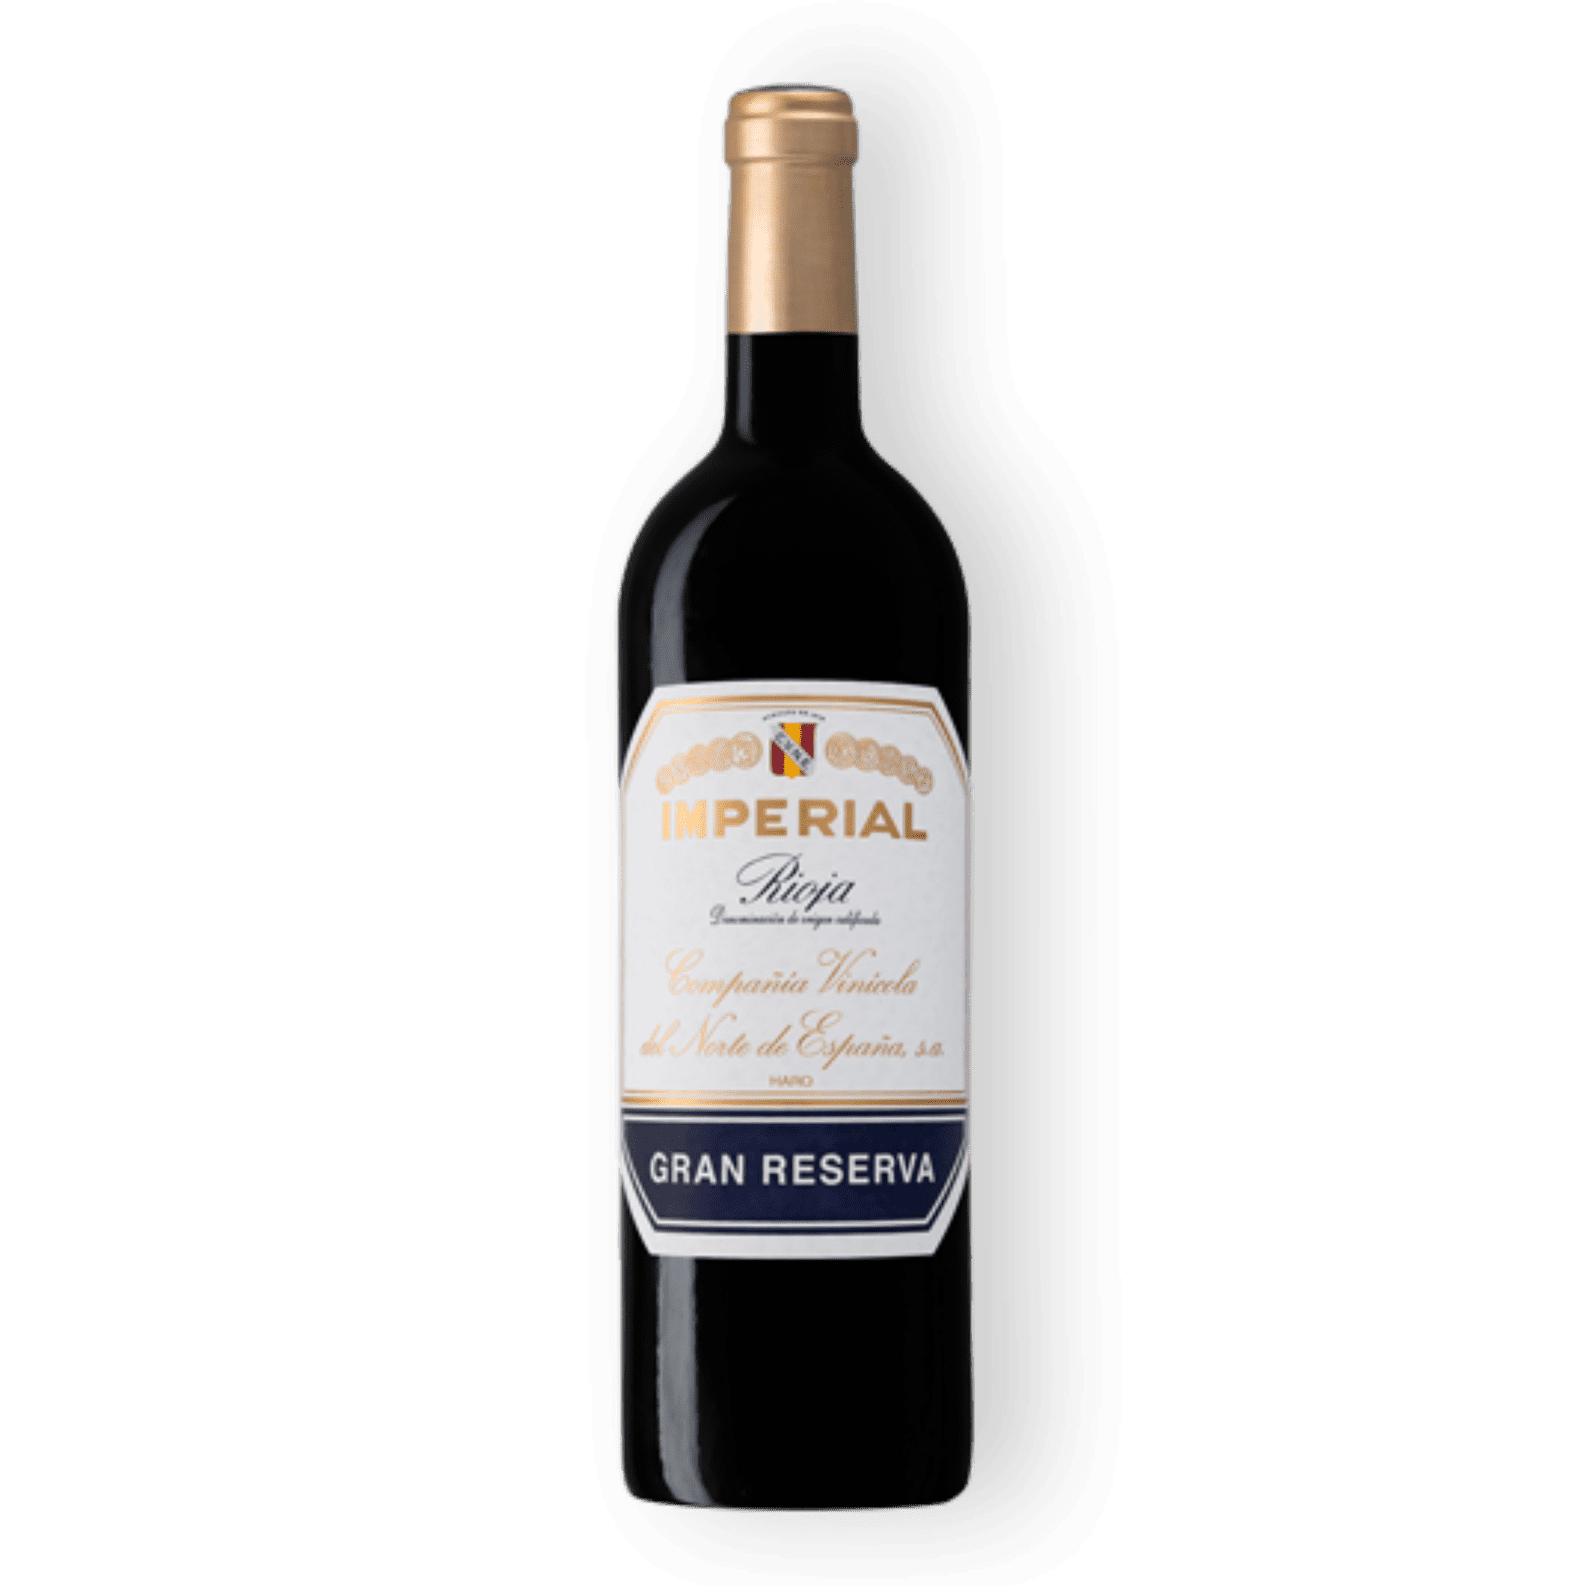 CVNE 'Imperial' Rioja Gran Reserva 2016